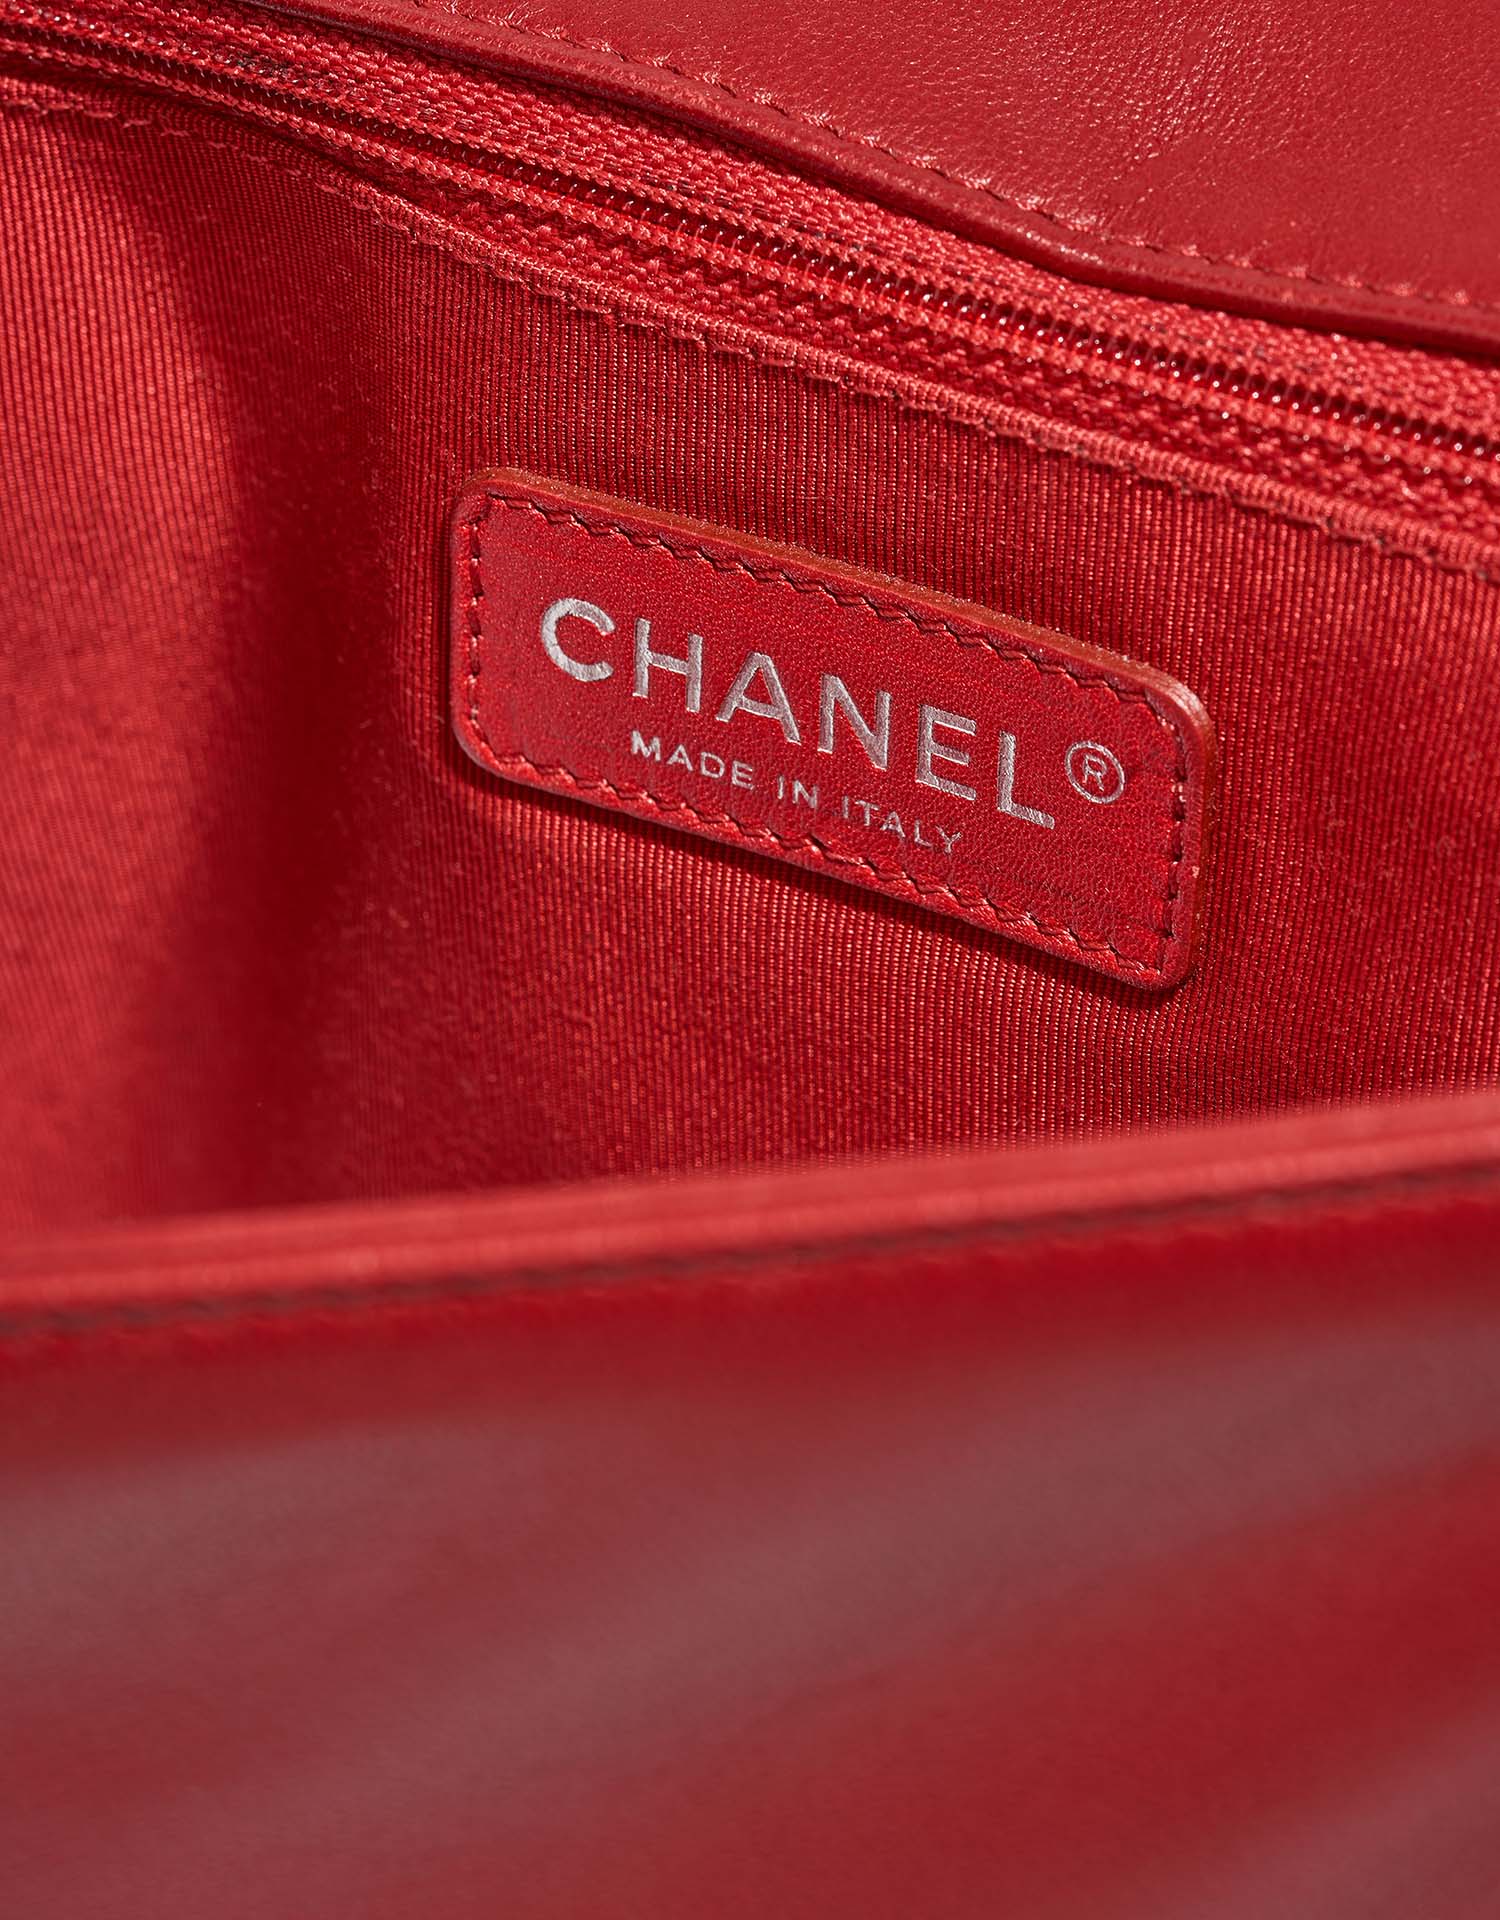 Chanel Boy Large Black-Red Logo  | Sell your designer bag on Saclab.com